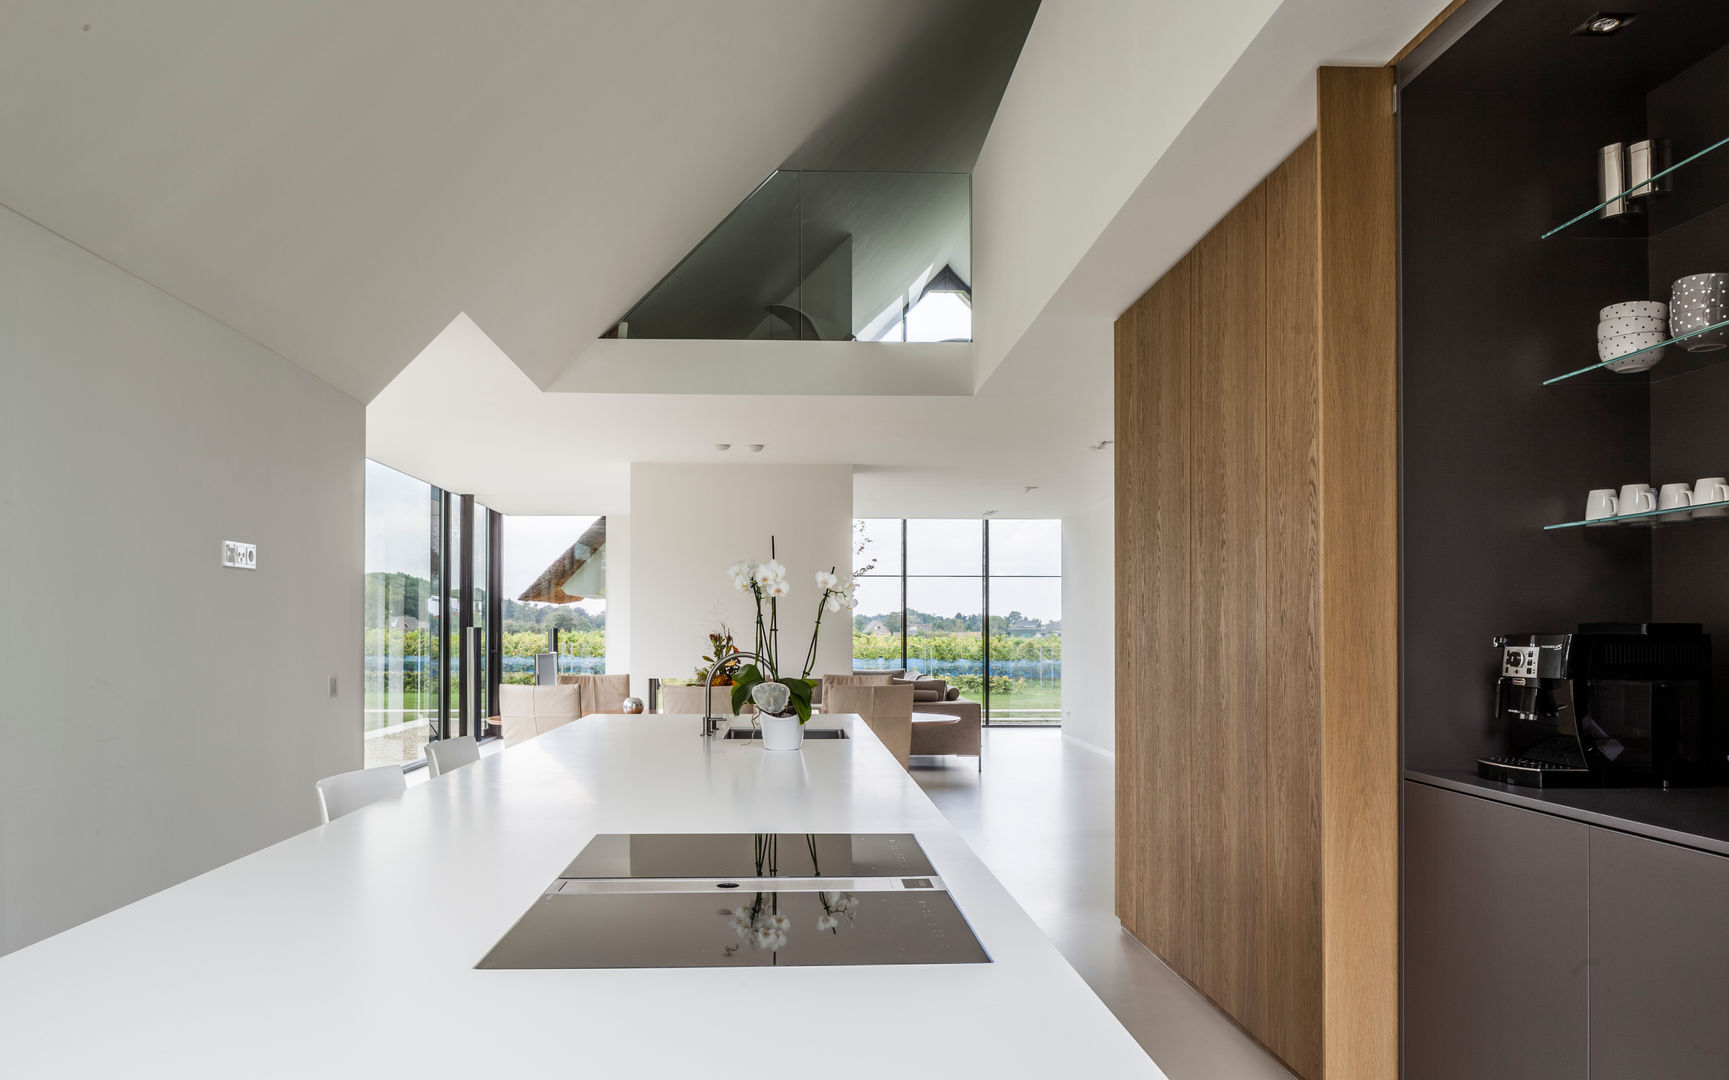 Glazen woonpalais in Berlicum, Maas Architecten Maas Architecten Modern style kitchen